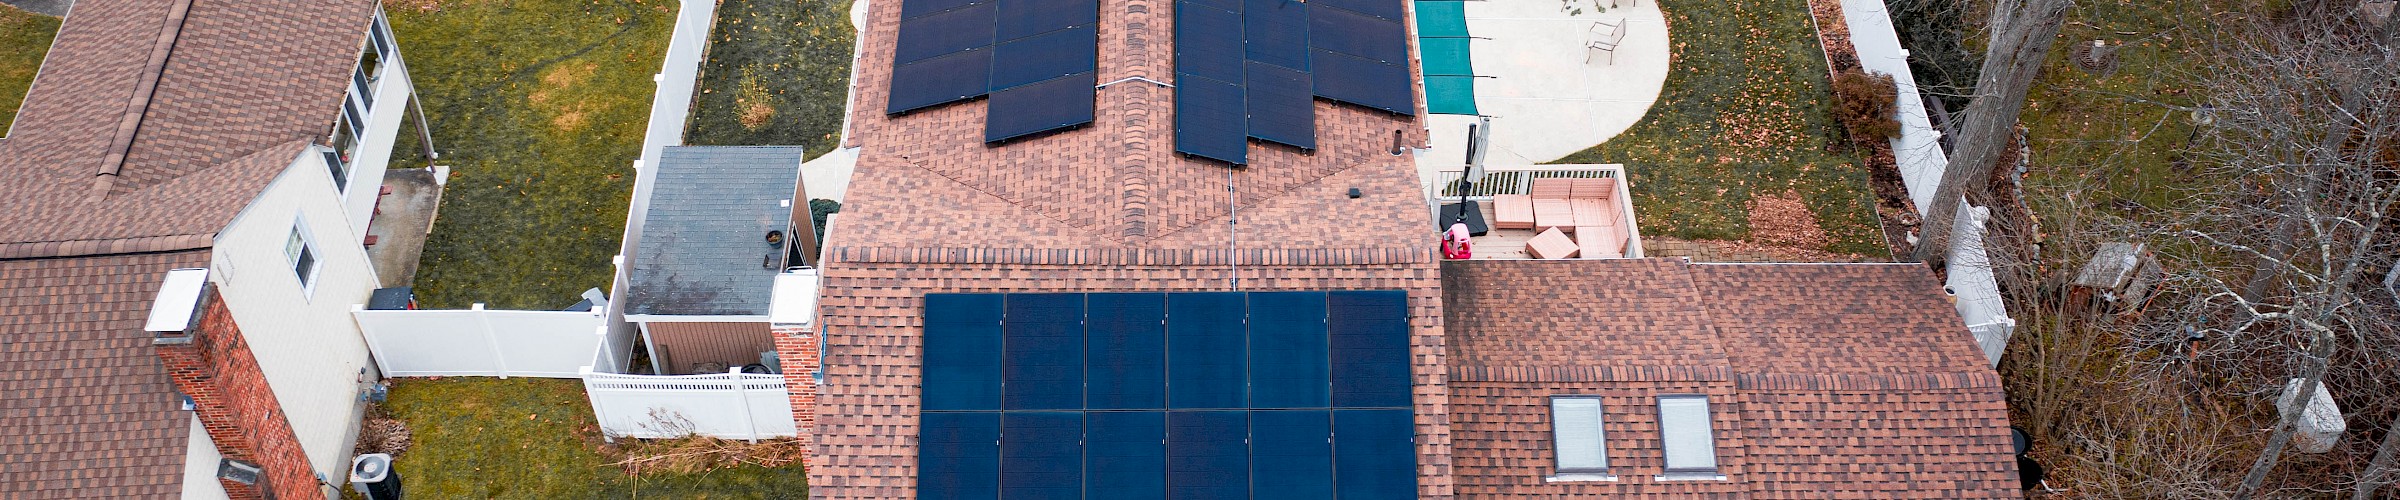 11.34kW Solar Installation - Dedham, MA